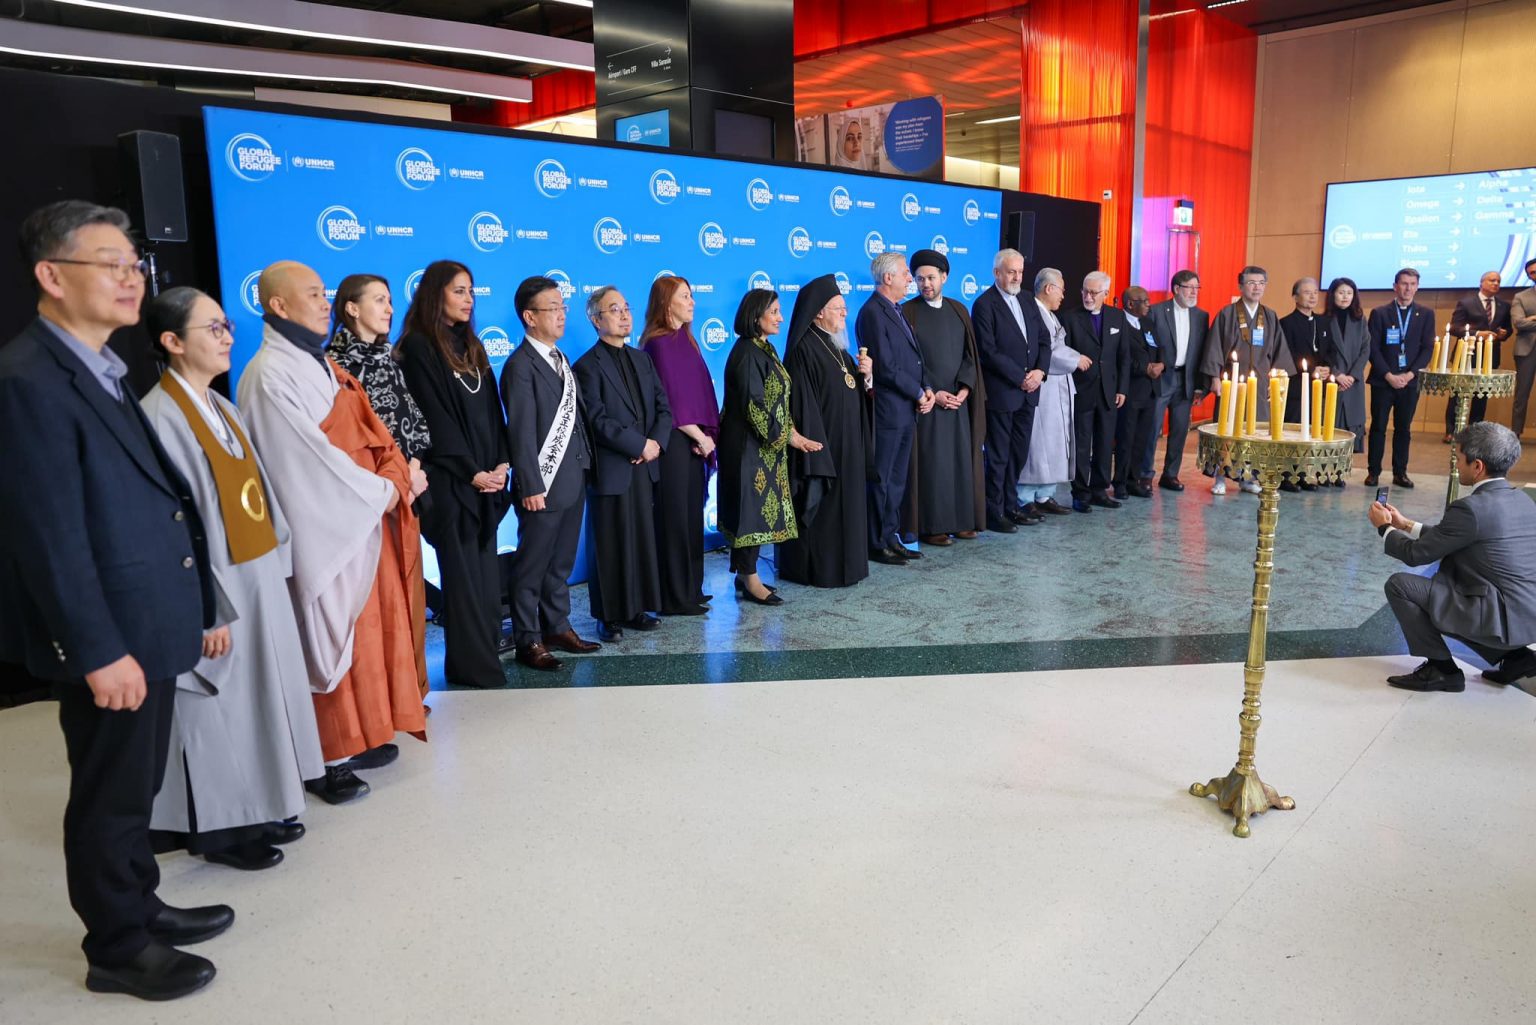 Ο Οικουμενικός Πατριάρχης στο Παγκόσμιο Φόρουμ του ΟΗΕ για τους Πρόσφυγες